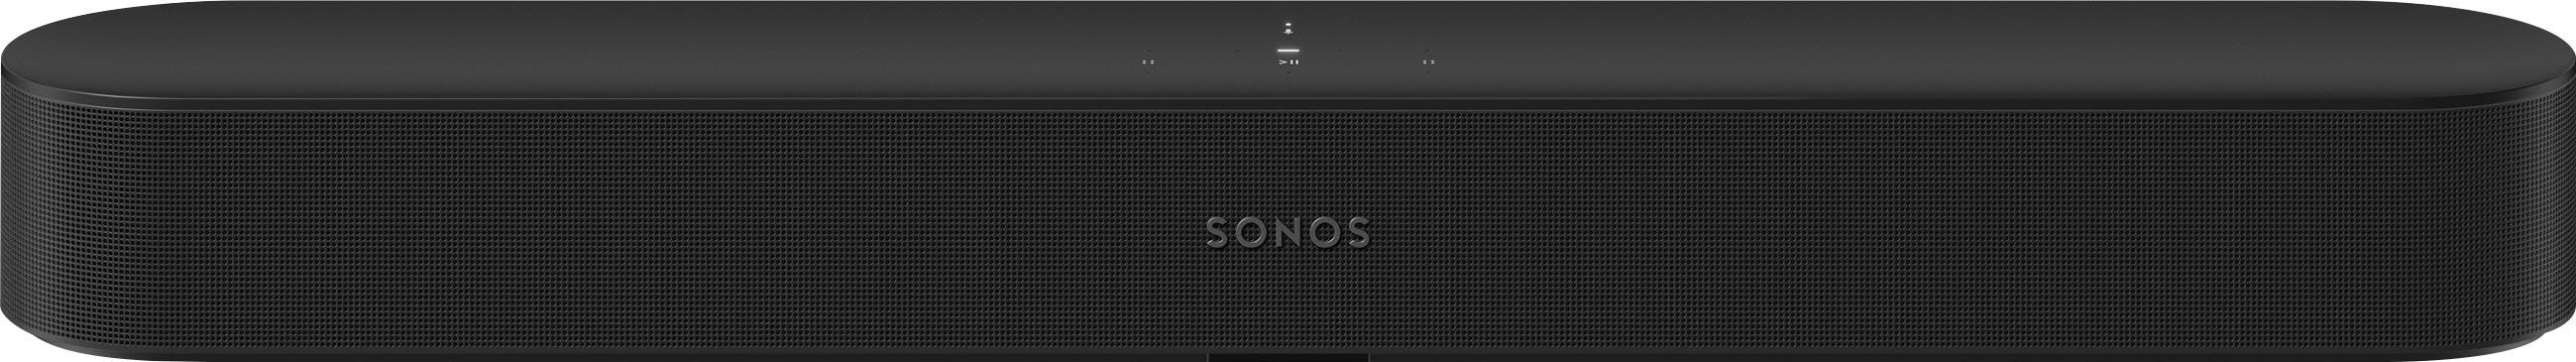 Sonos Beam (Gen 2) Black BEAM2US1BLK - Best Buy | Best Buy U.S.